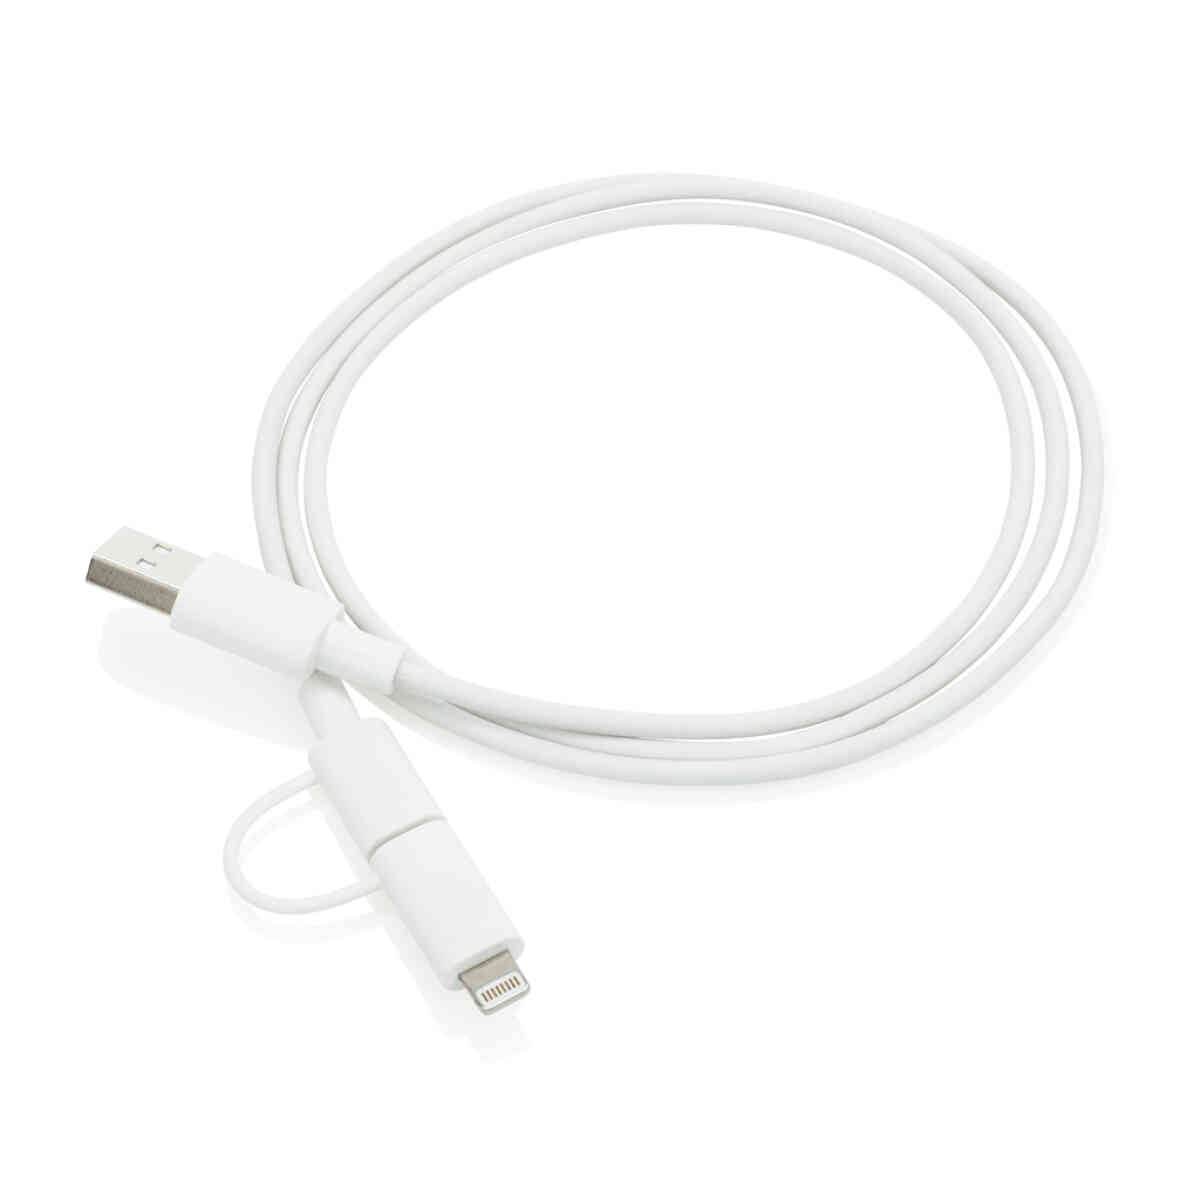 Promotivni 2u1 kabel za iOS i Android | Promotivni proizvodi | Promopoint.hr